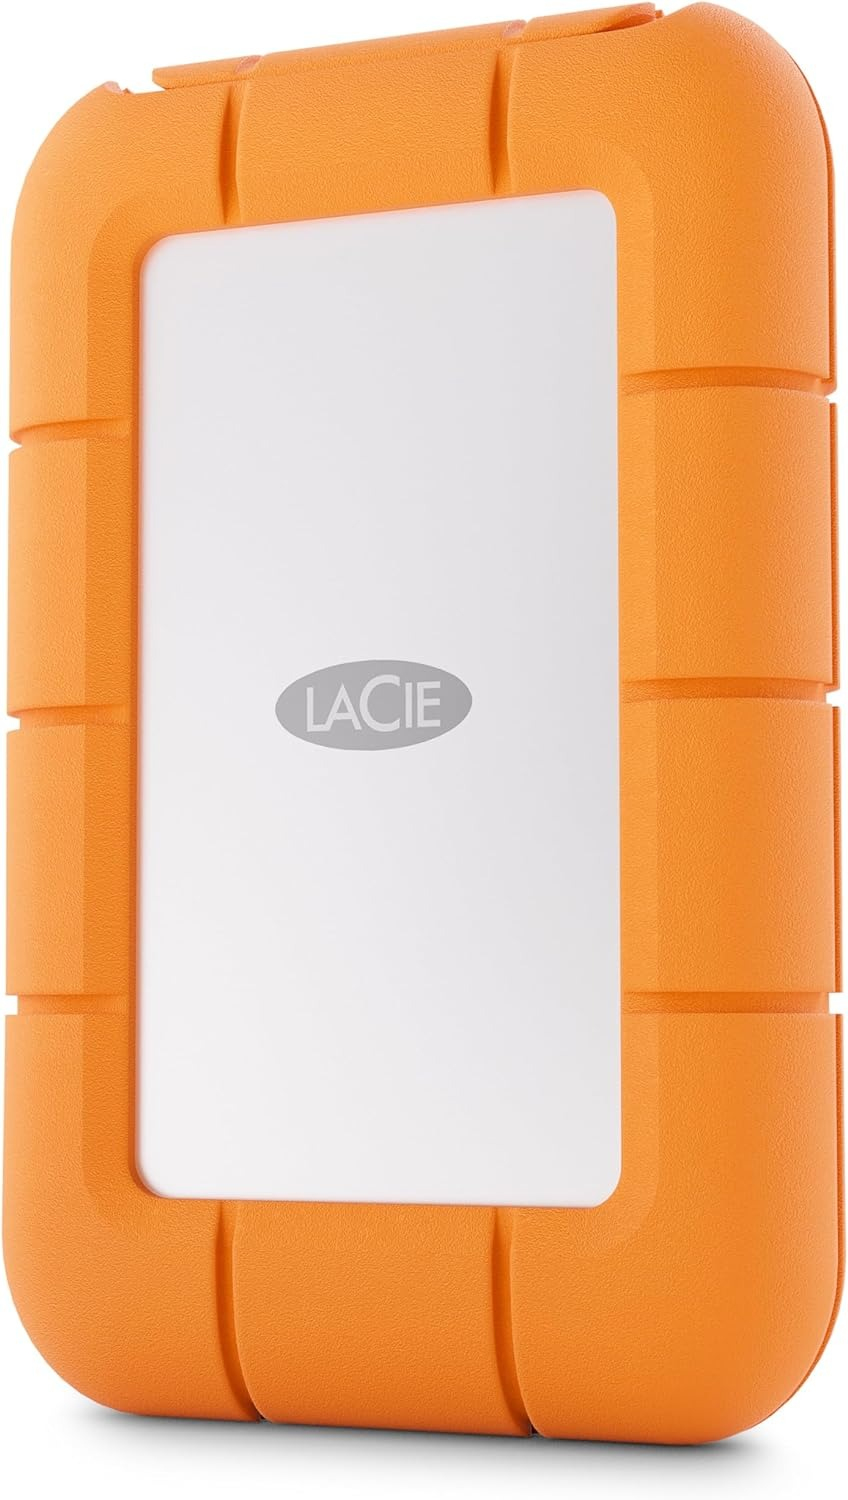 LaCie STMF1000400 lecteur à circuits intégrés externe 1 To Gris, Orange